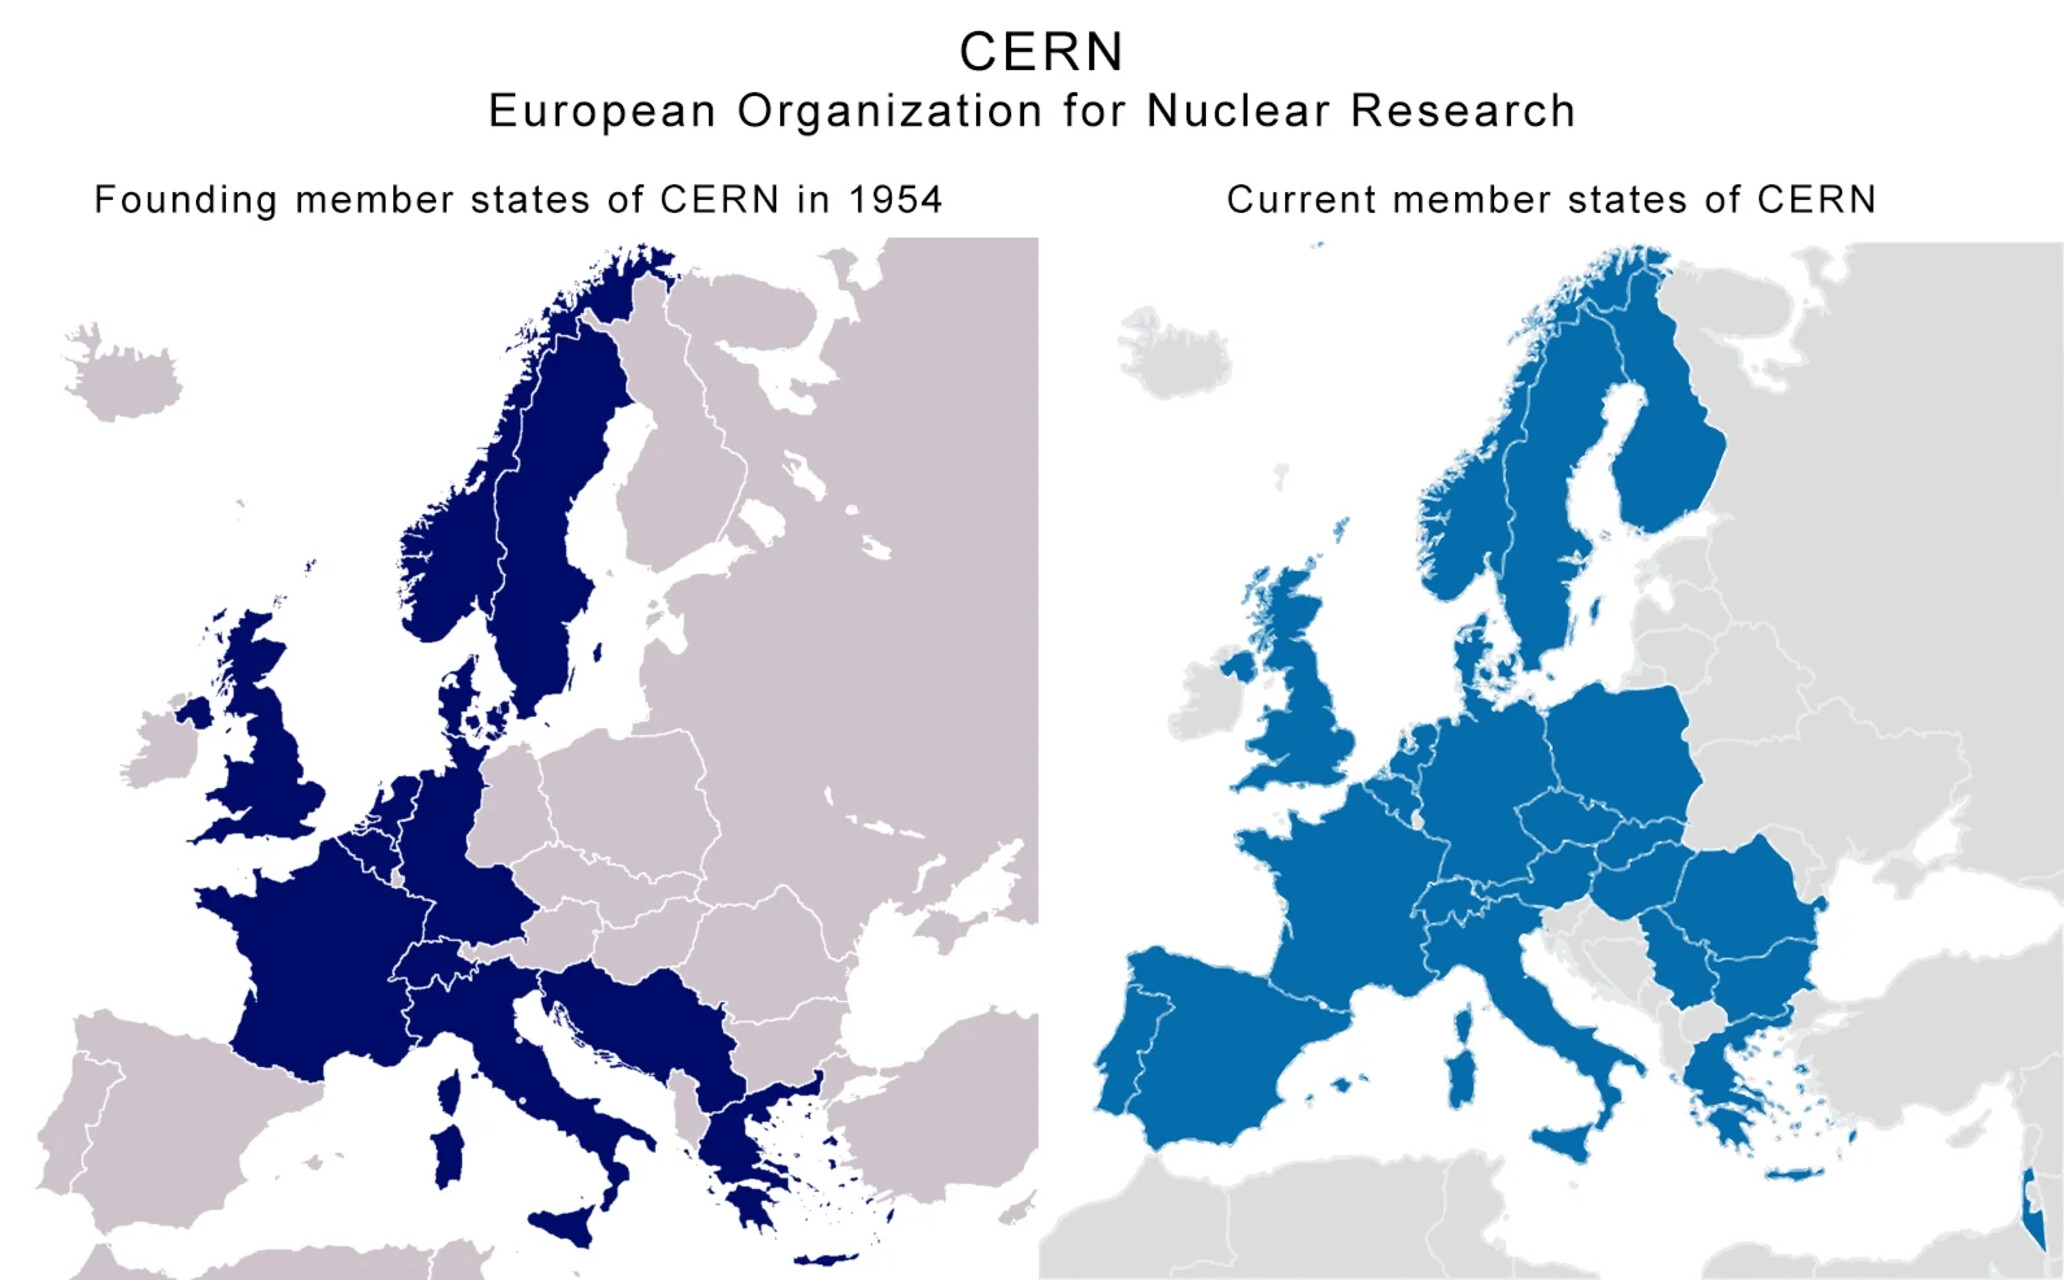 Brésil : deux cartes avec une comparaison entre les pays fondateurs et les États membres actuels du CERN